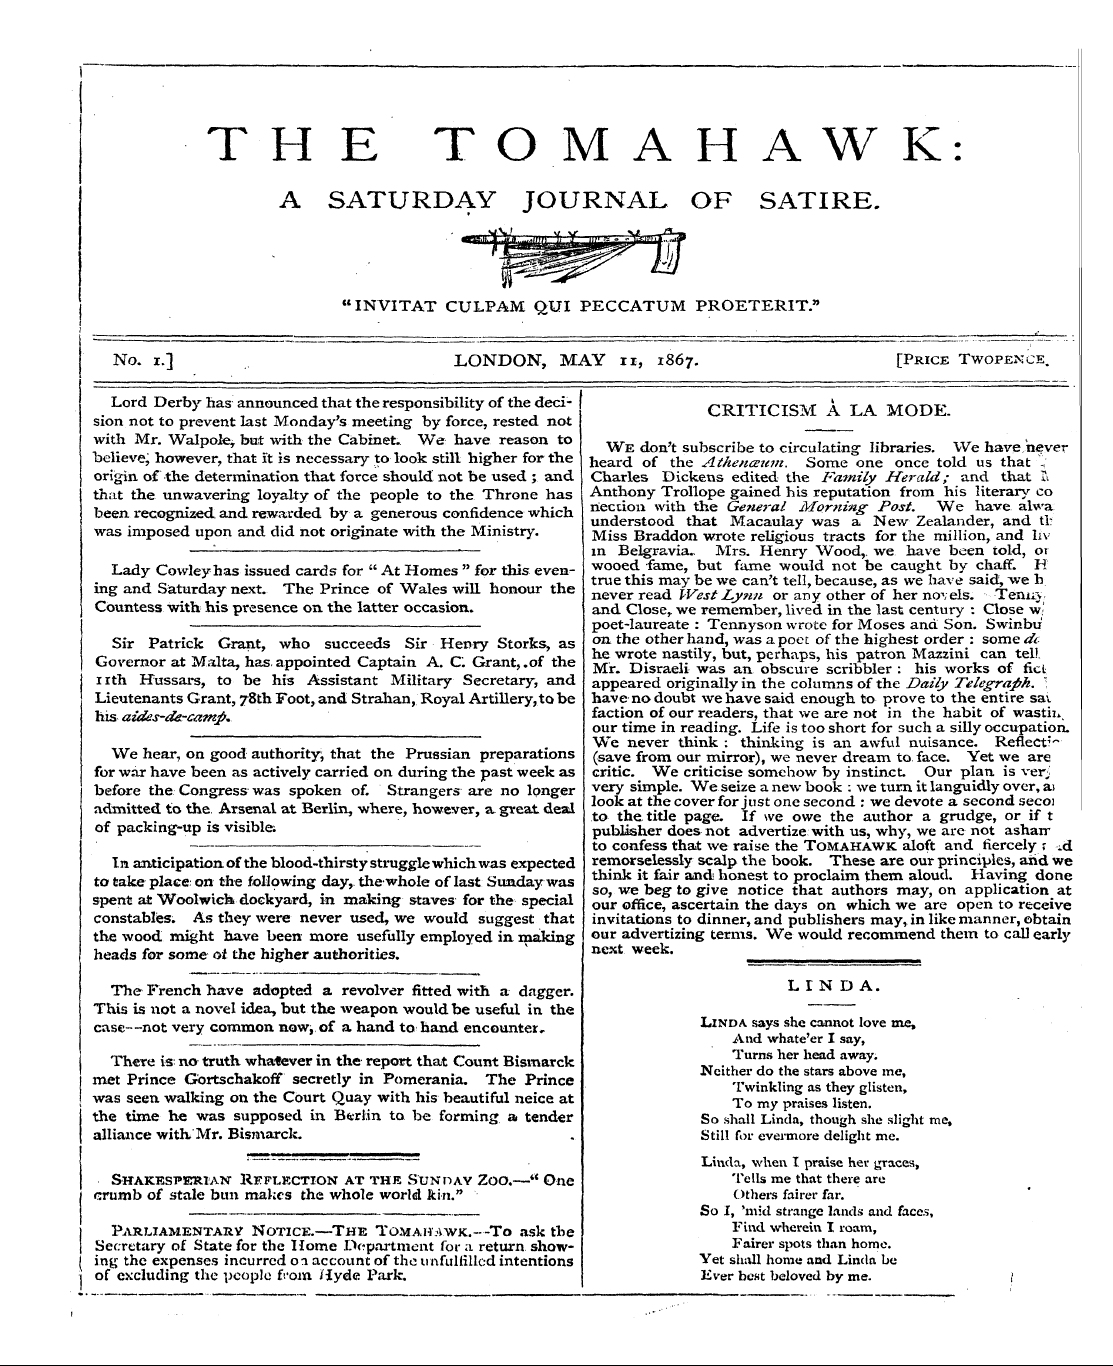 Tomahawk (1867-1870): jS F Y, 1st edition - Criticism A La Mode.